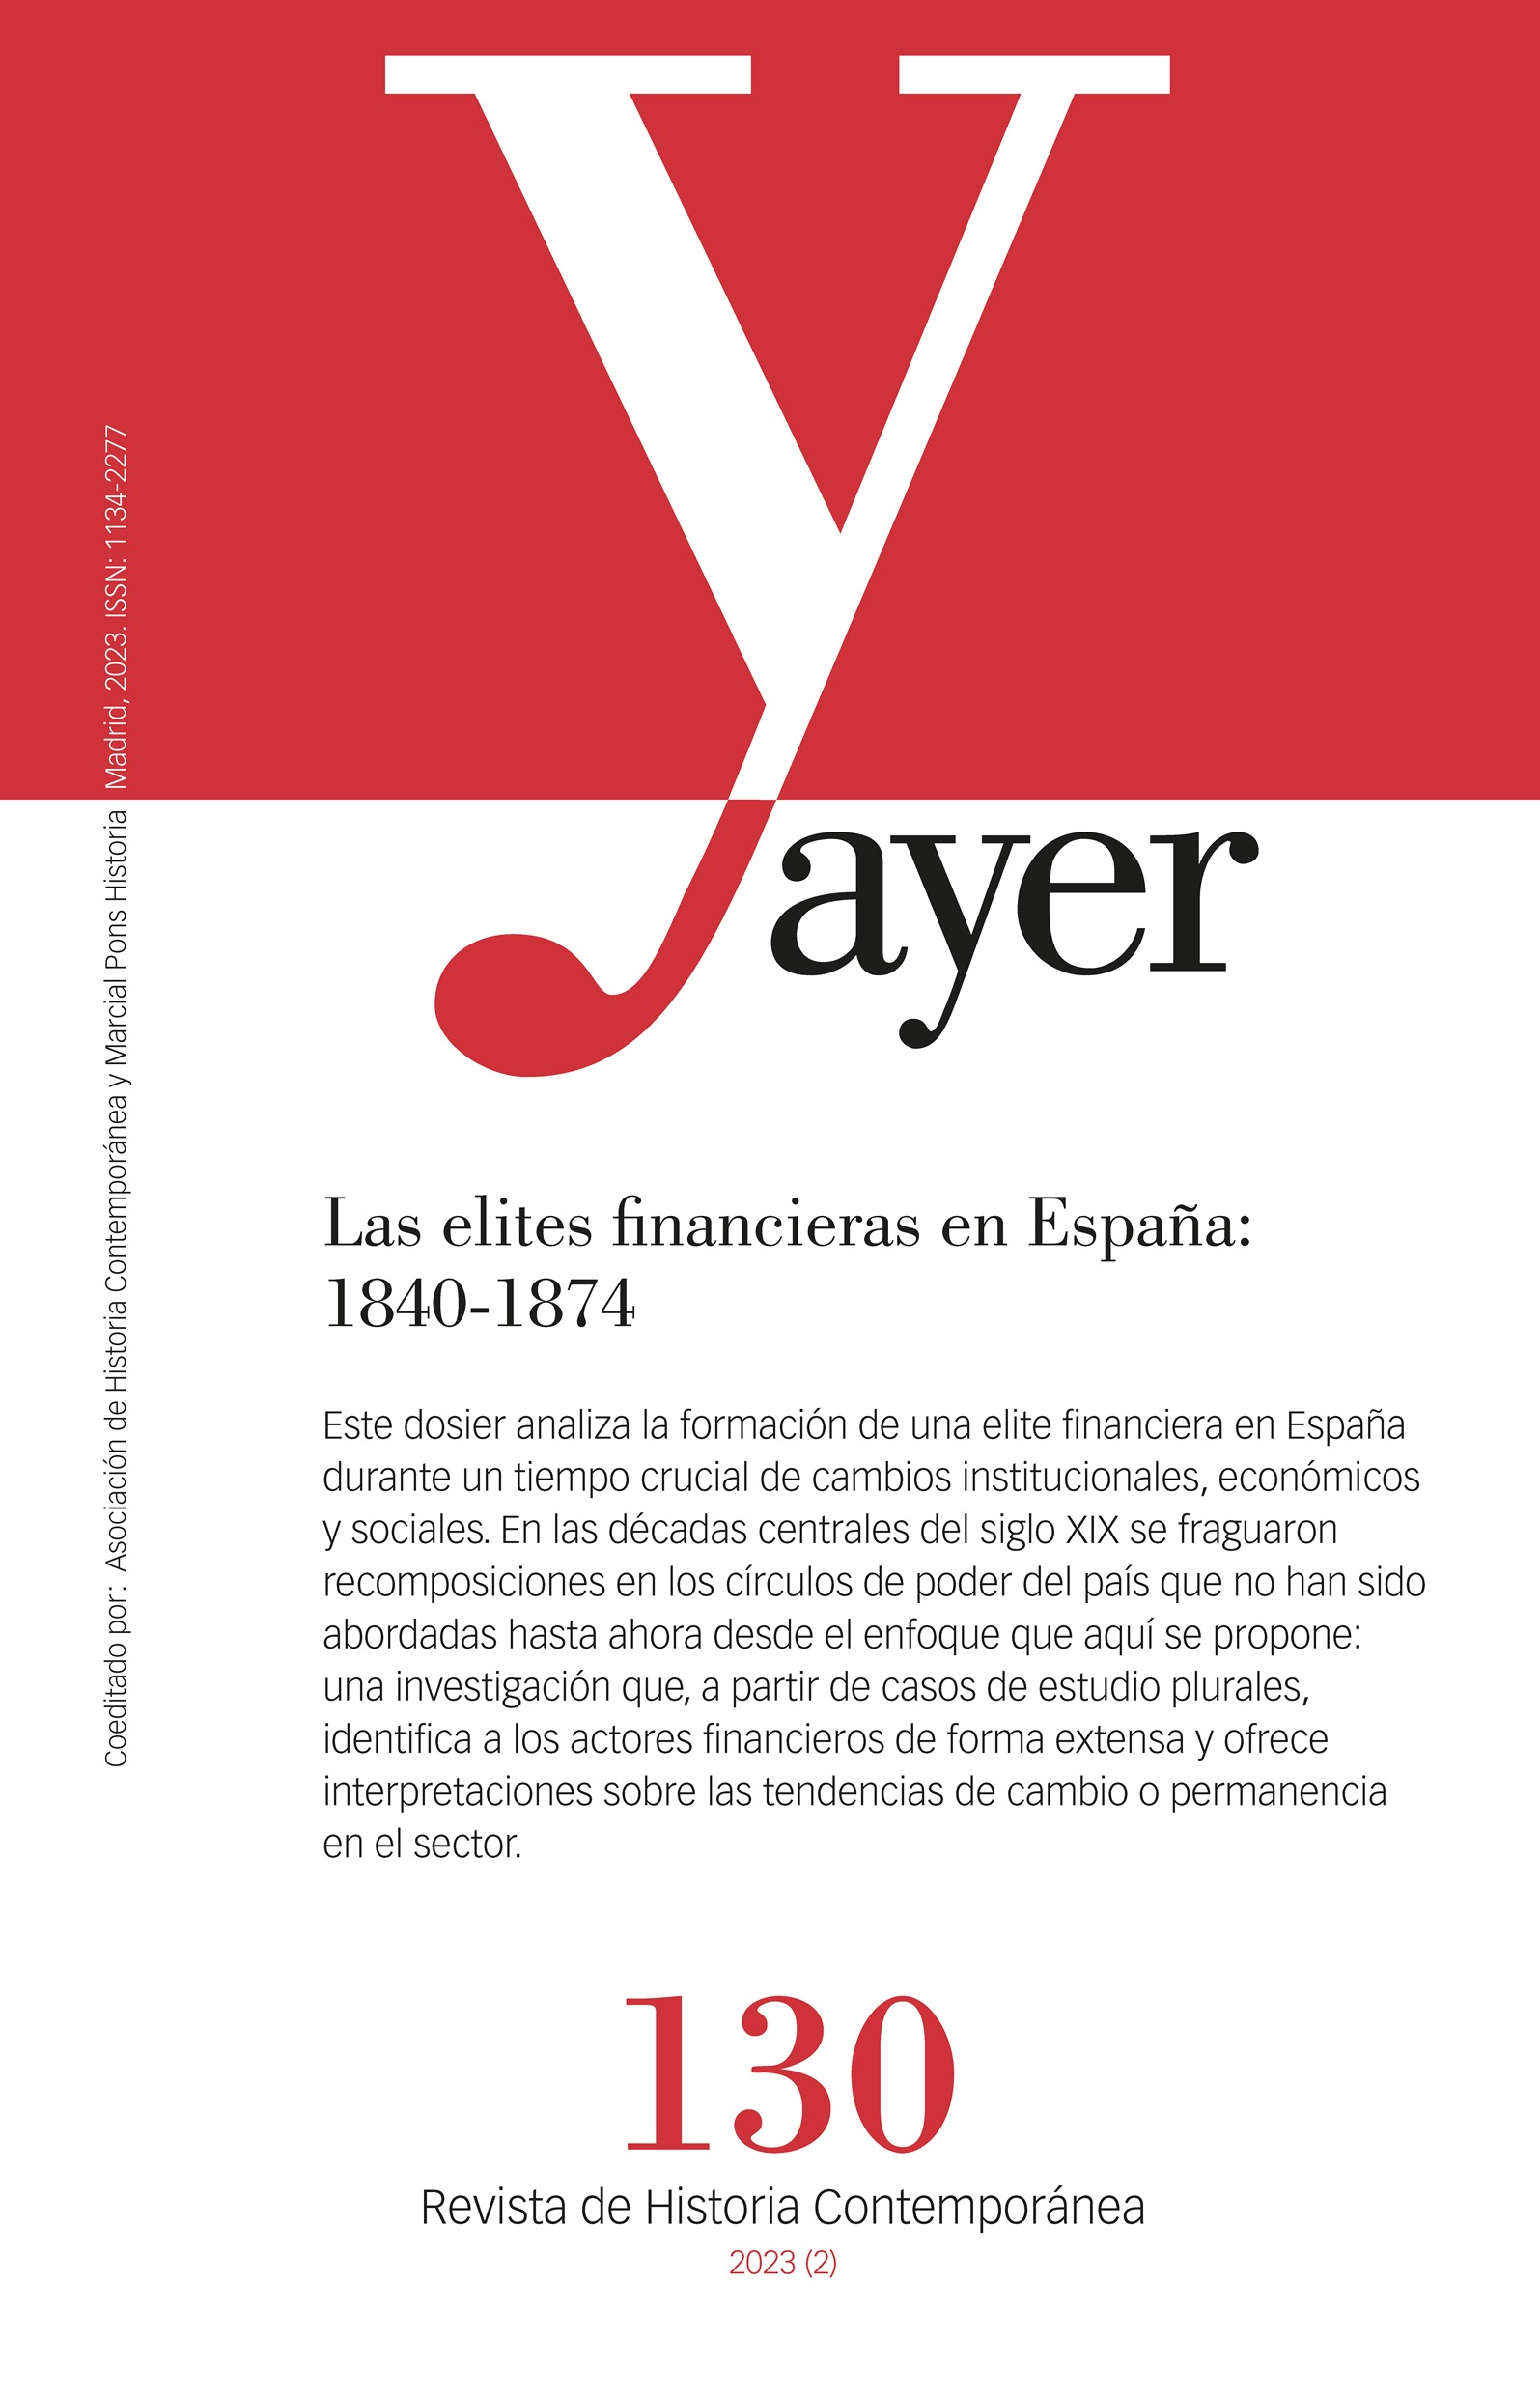 Las elites financieras en España: 1840-1874